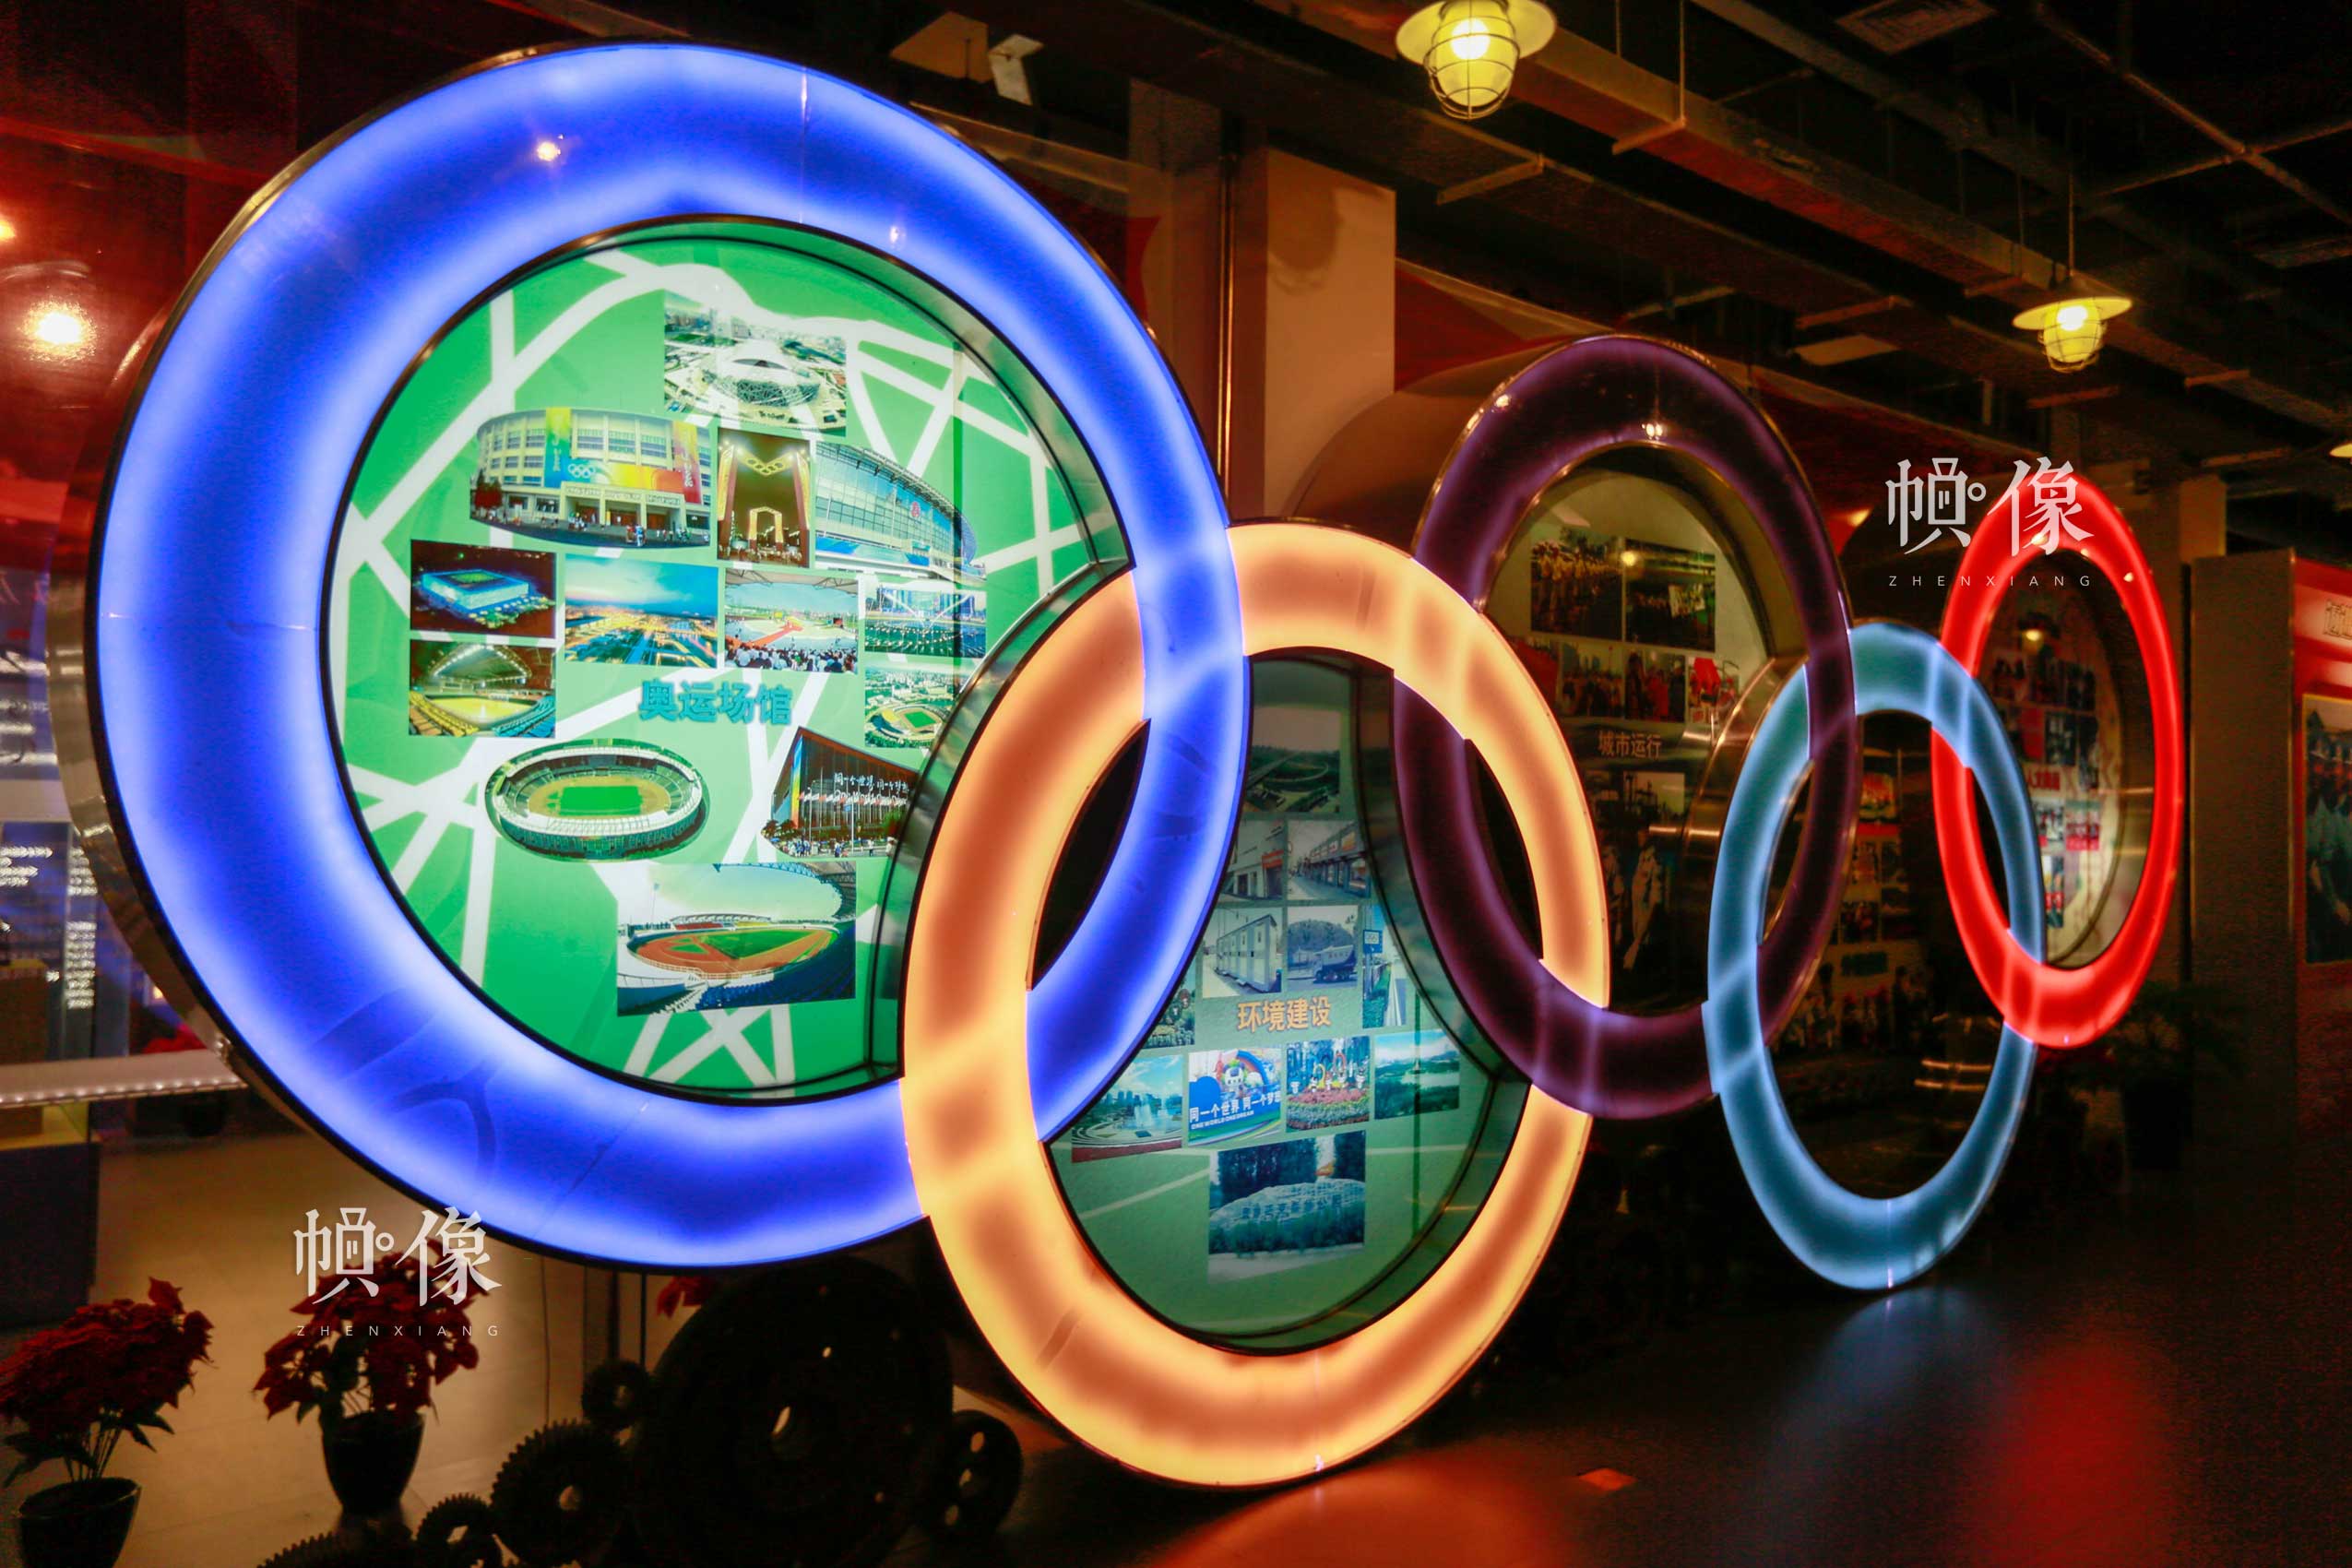 朝陽規劃藝術館現代展區一角，陳列奧運相關內容展品。朝陽規劃藝術館供圖